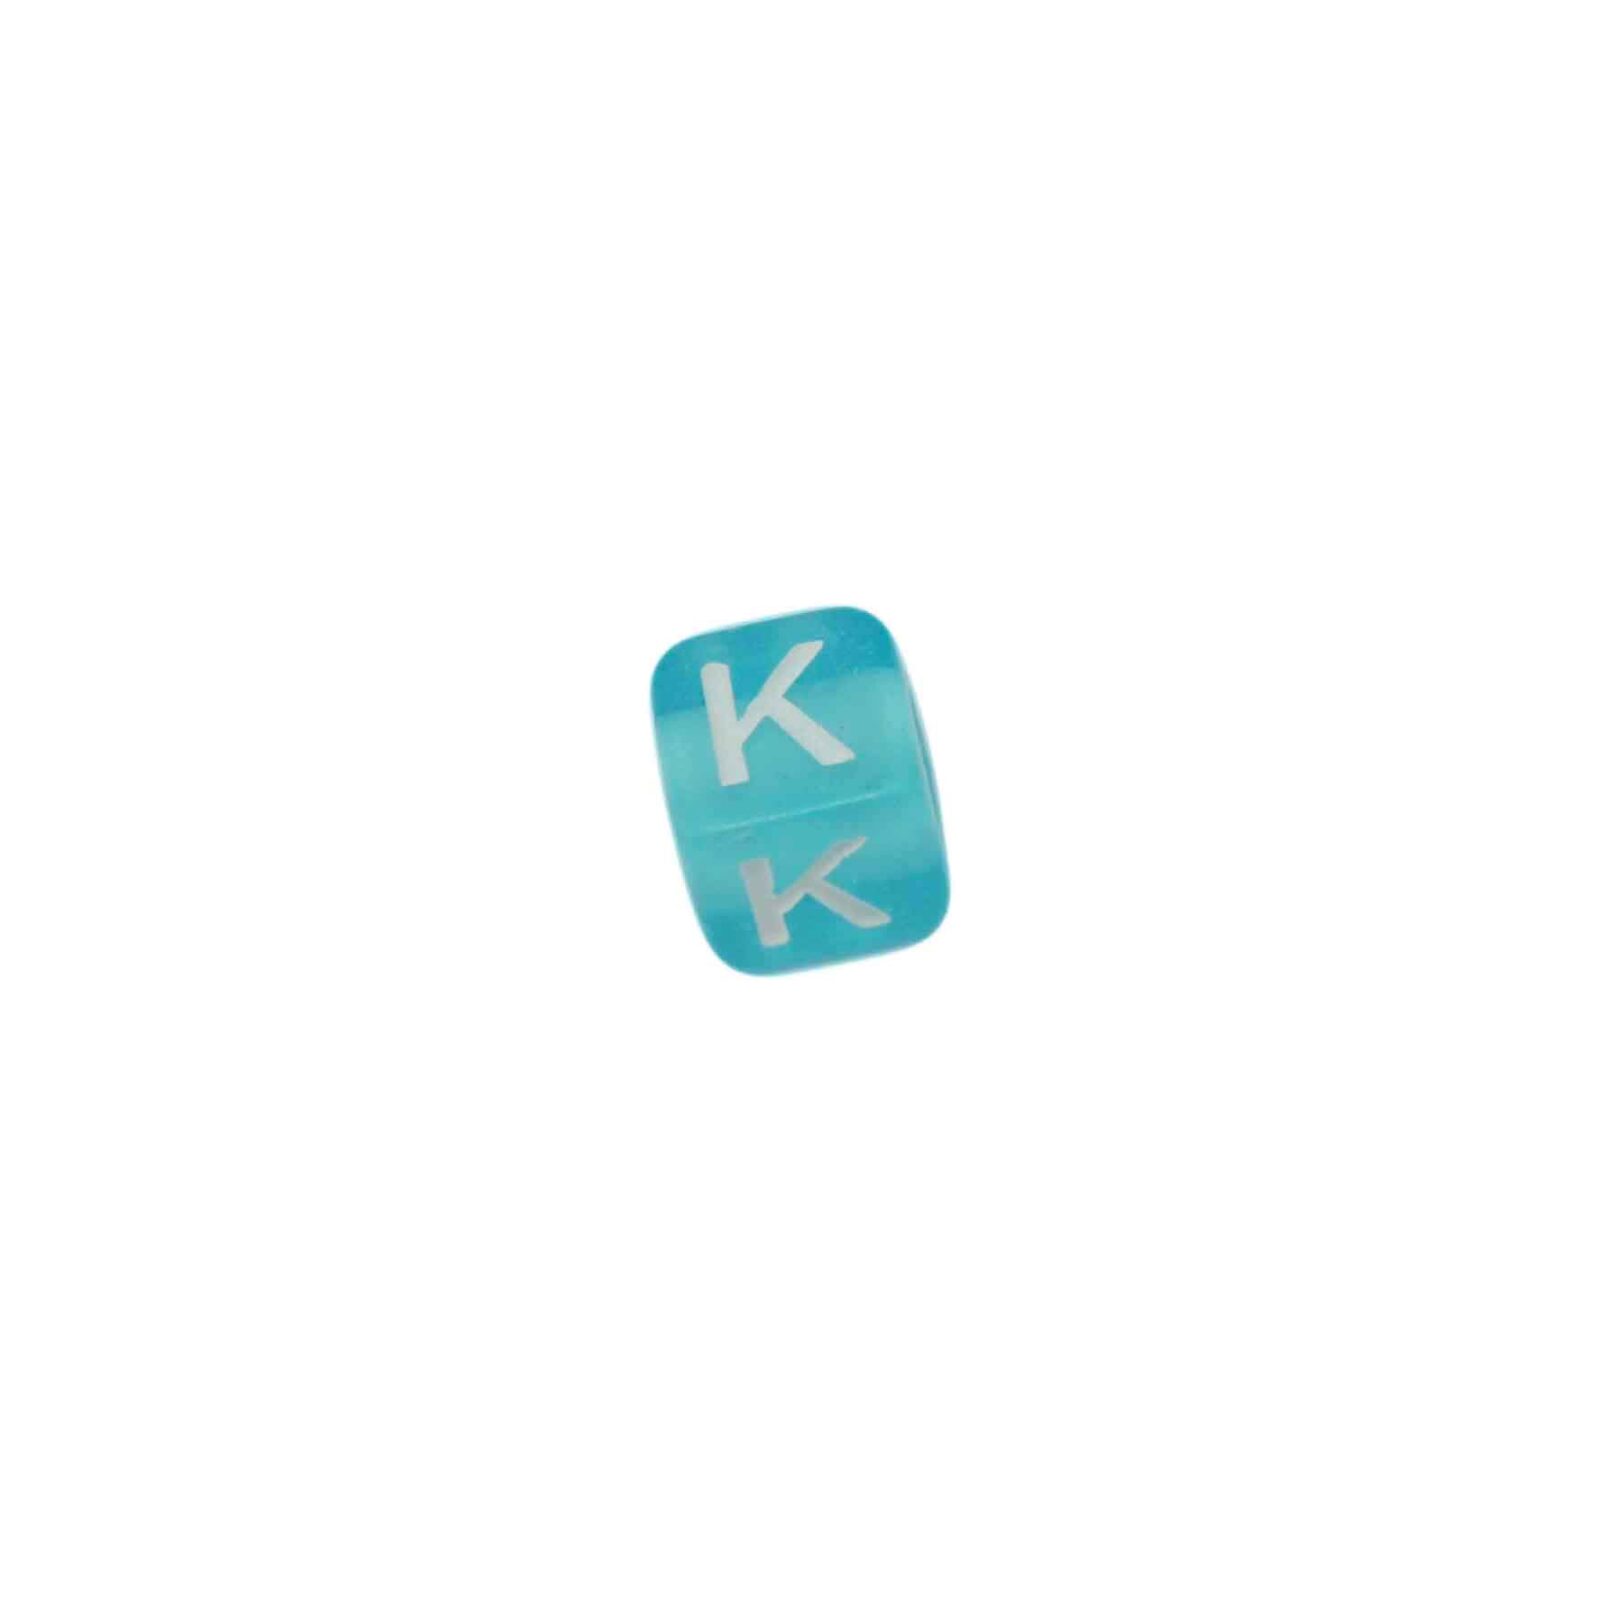 Blauwe letterkraal K